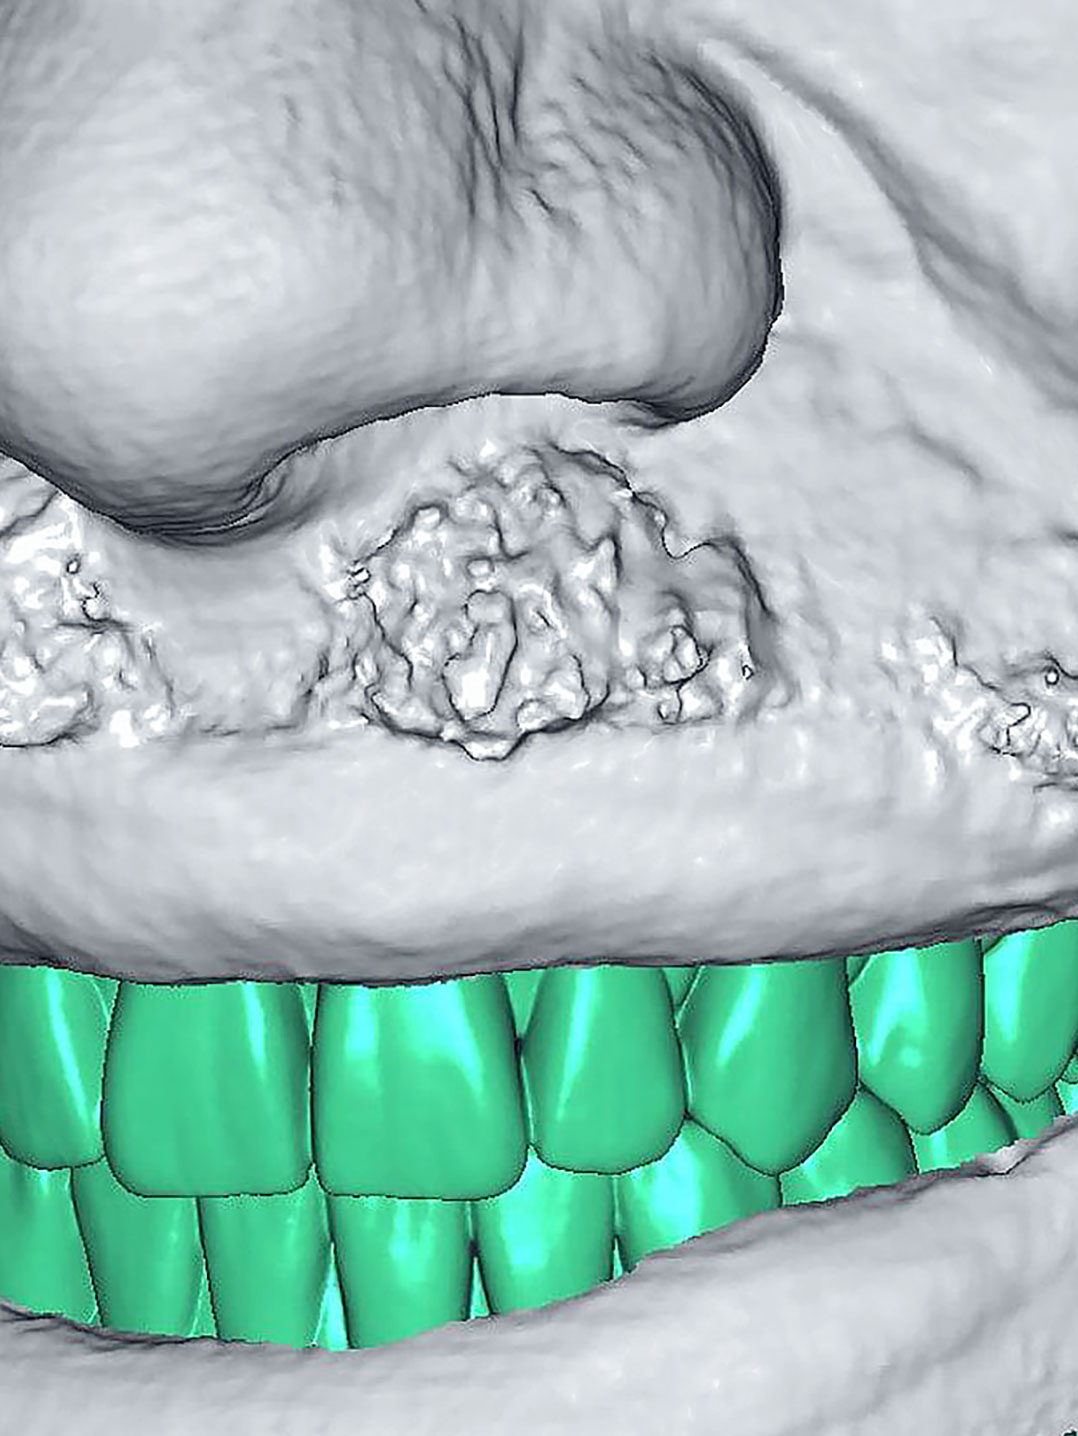 3D-Dentalscanner Artec Space Spider verhilft Zahnimplantat-Patienten zu einem perfekten Lächeln